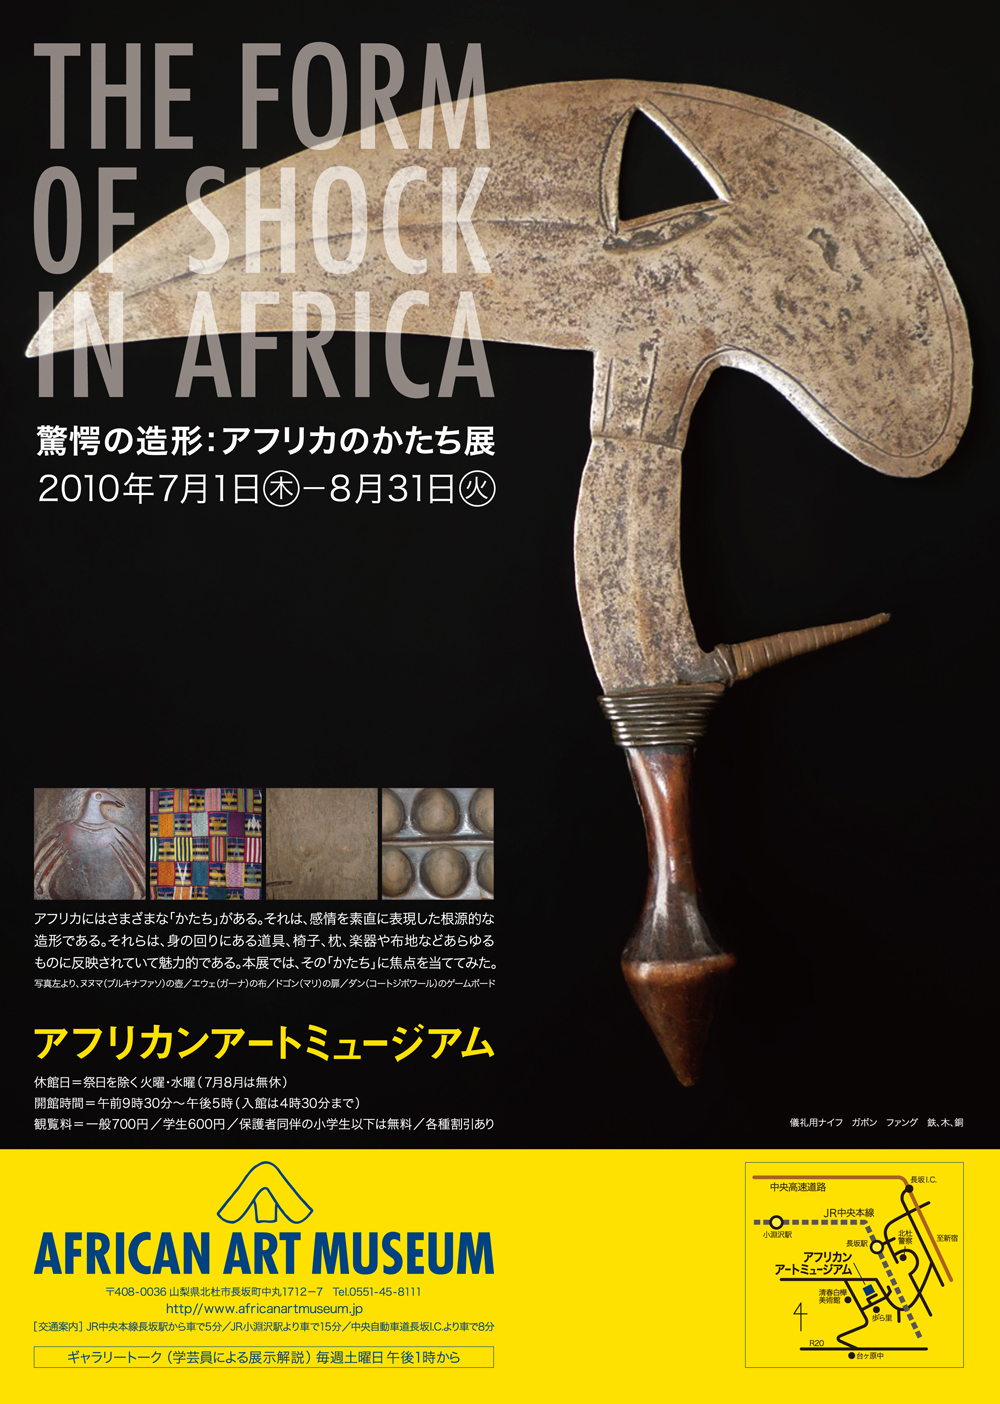 驚愕の造形:アフリカのかたち展